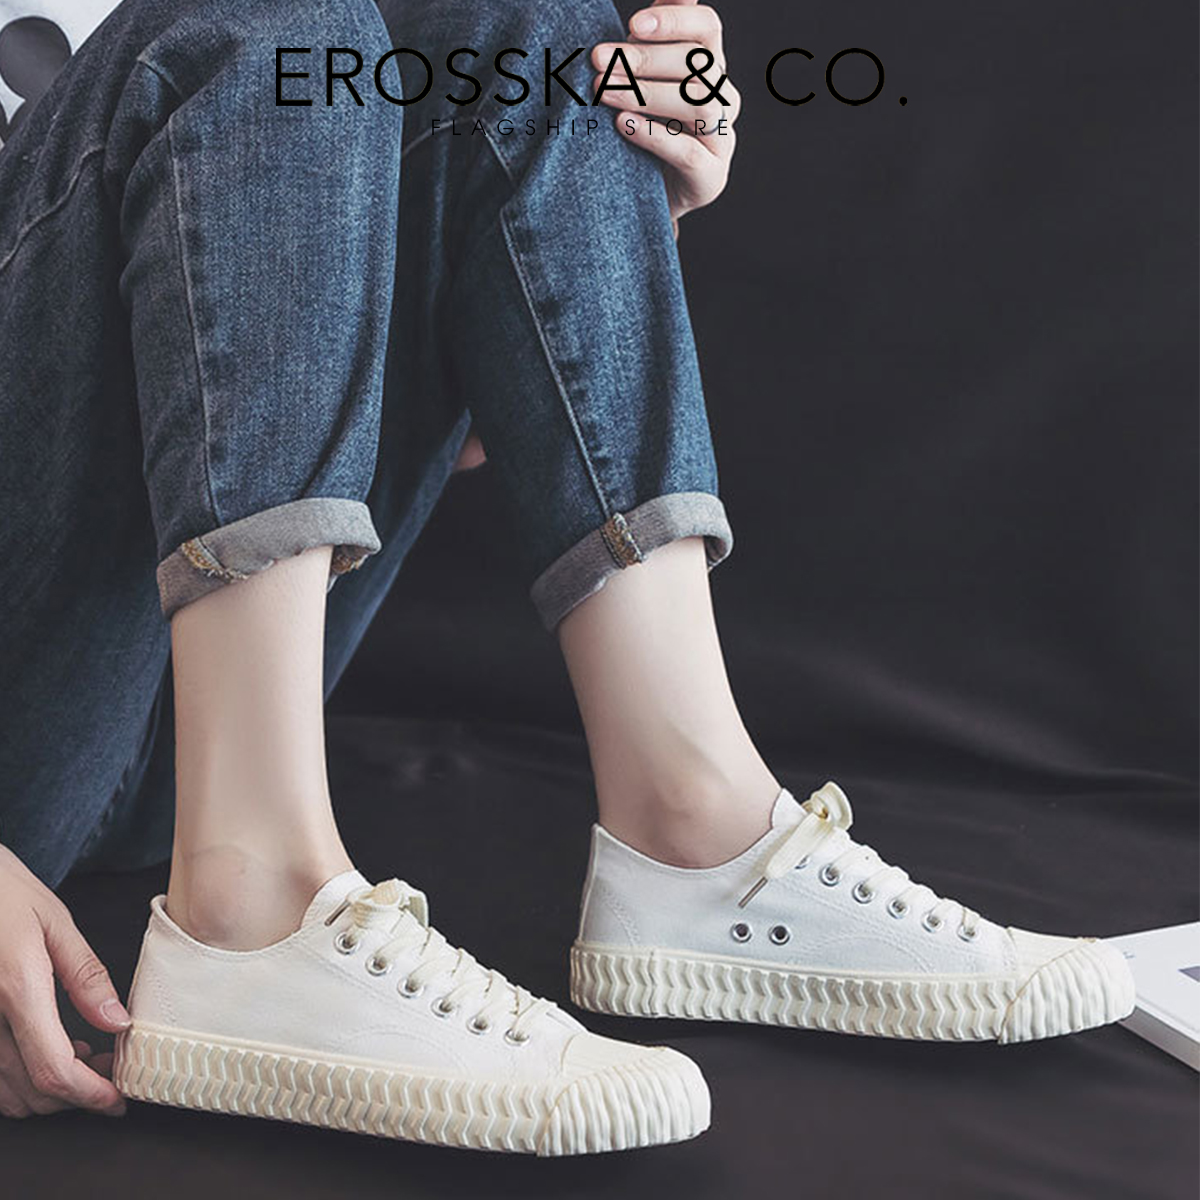 Erosska - Giày sneaker nữ đế bánh mì đi học kiểu dáng basic dễ phối - GS011